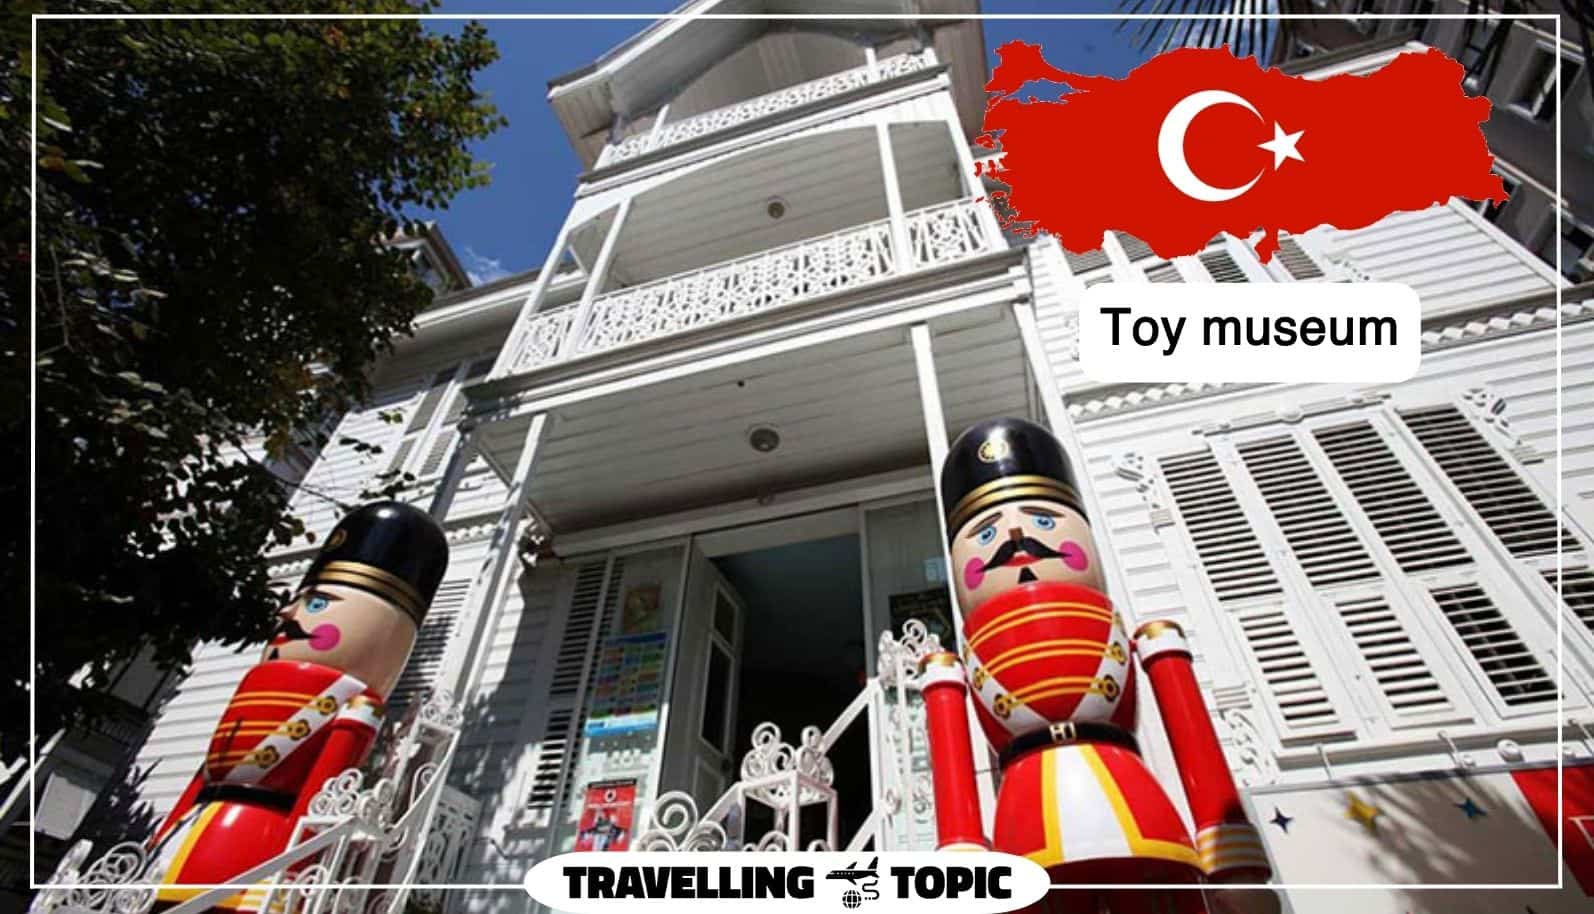 Toy museum(İSTANBUL OYUNCAK MÜZESI)